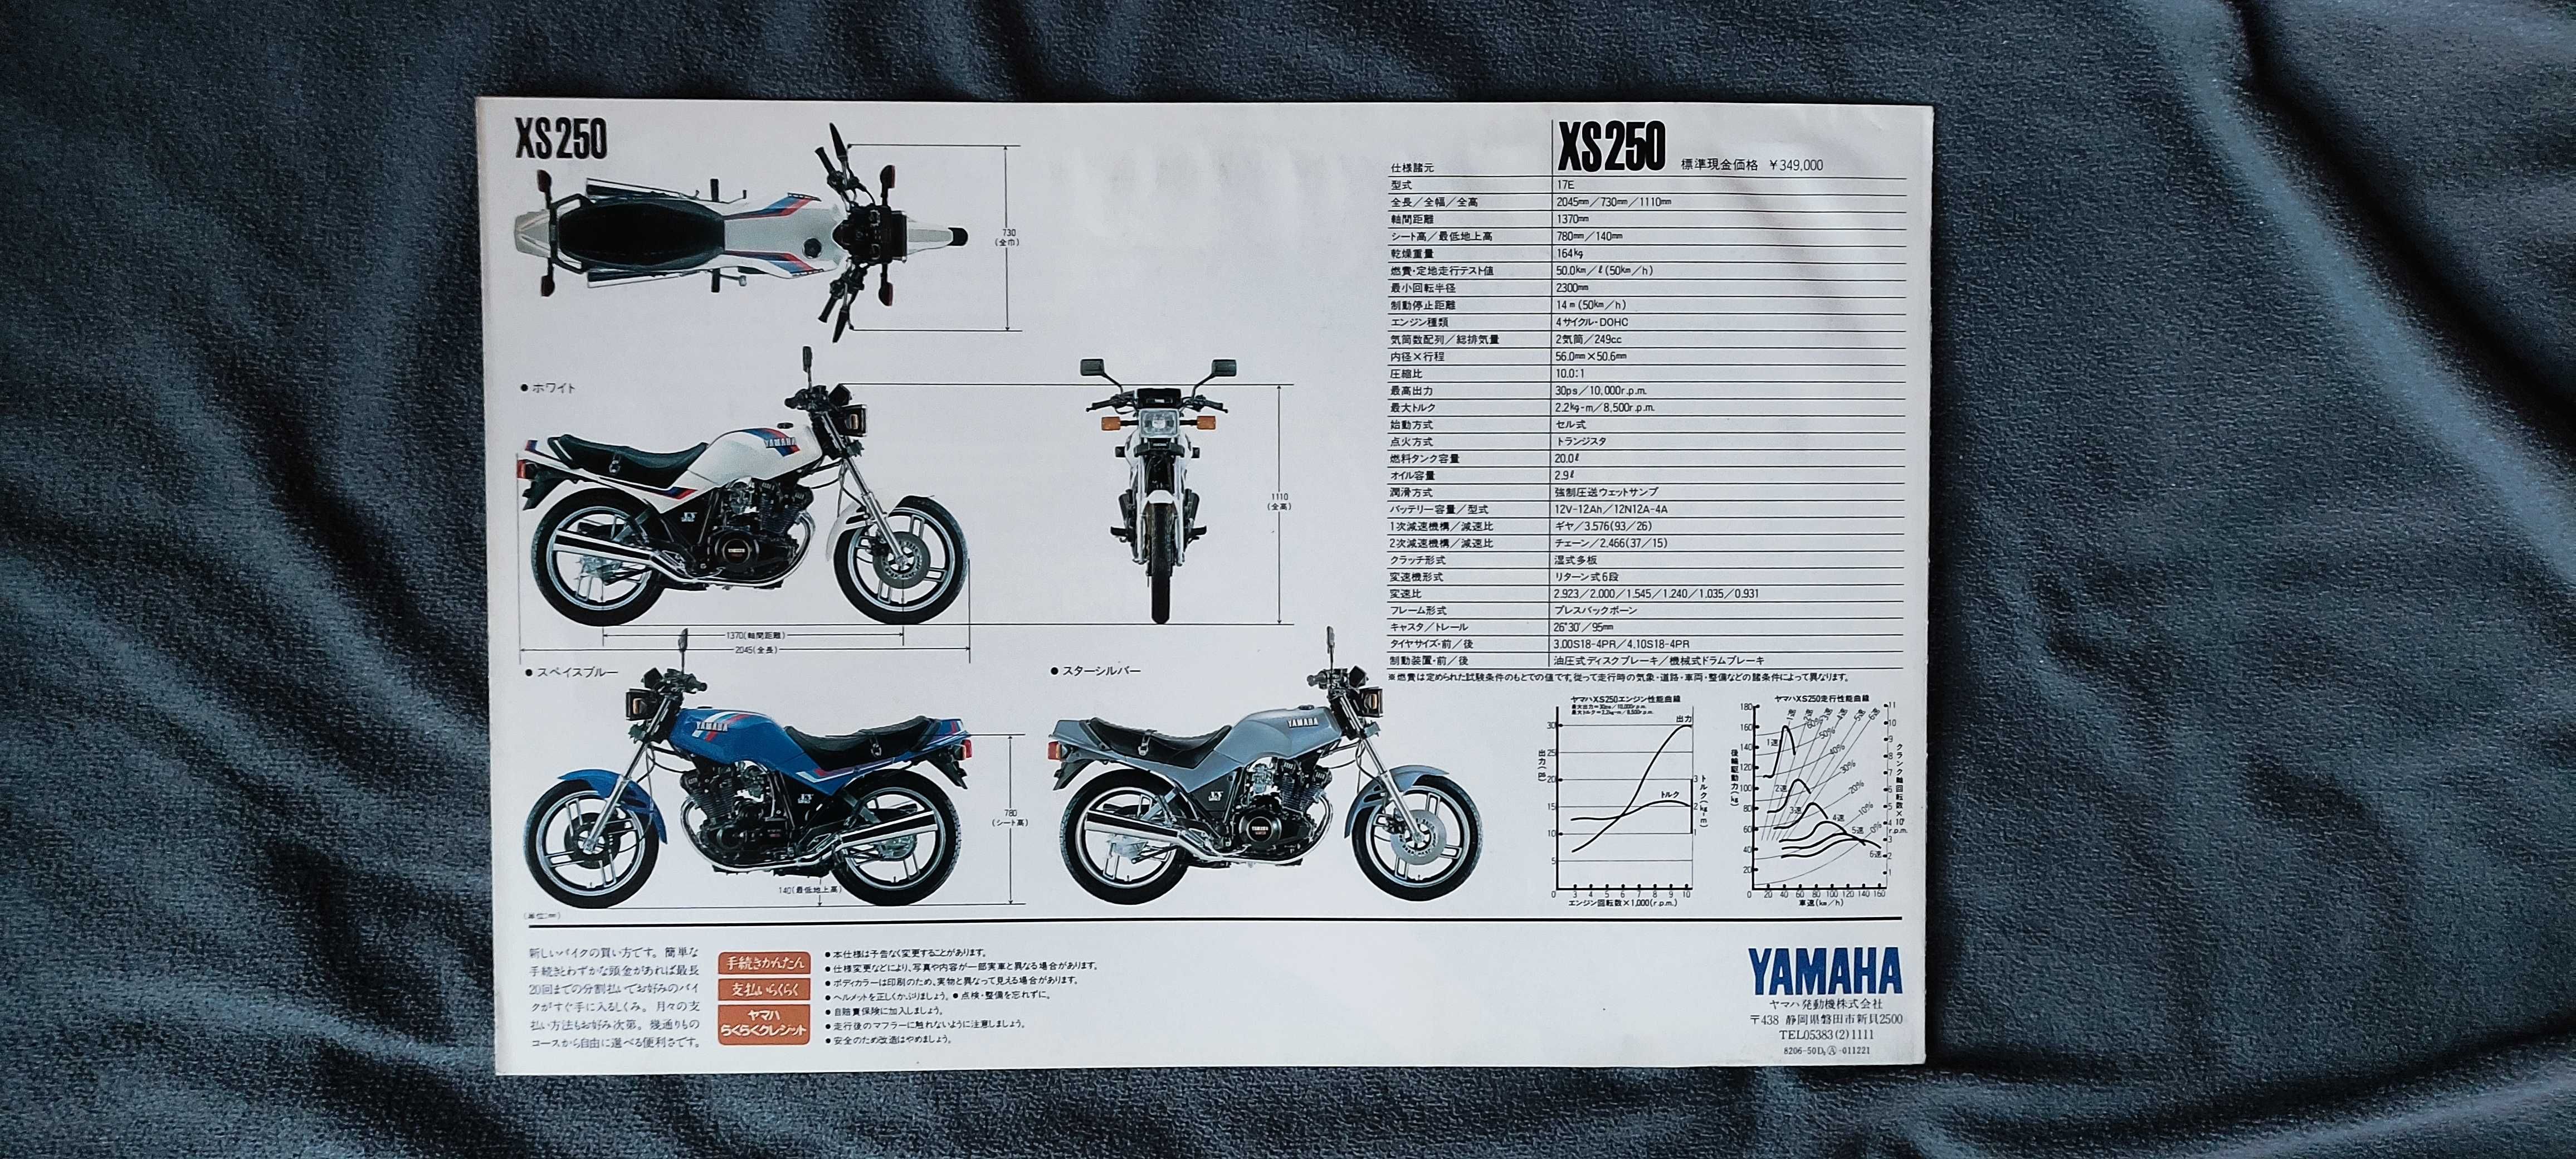 Prospekt Yamaha XS250